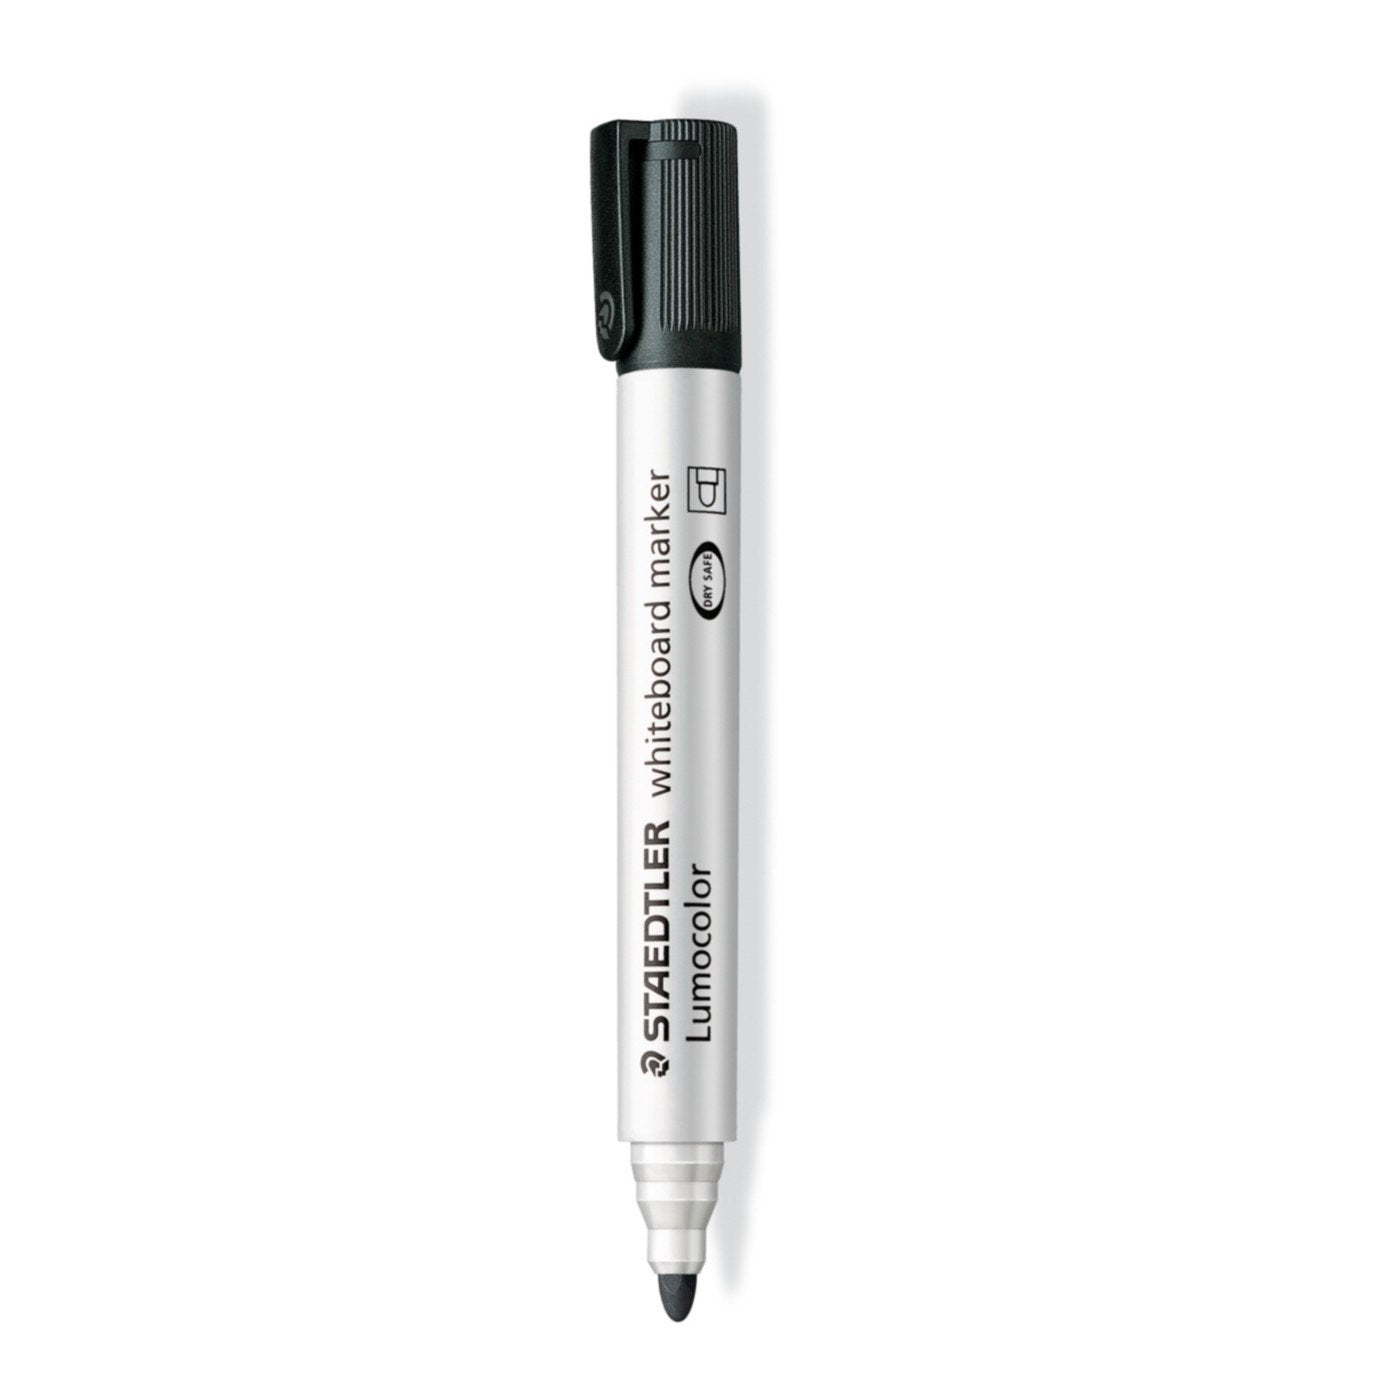 Staedtler Lumocolor Whiteboard Marker Pens 351 - Dry Erase Correction Pen -  Bullet Tip - Pack of 4 x Black